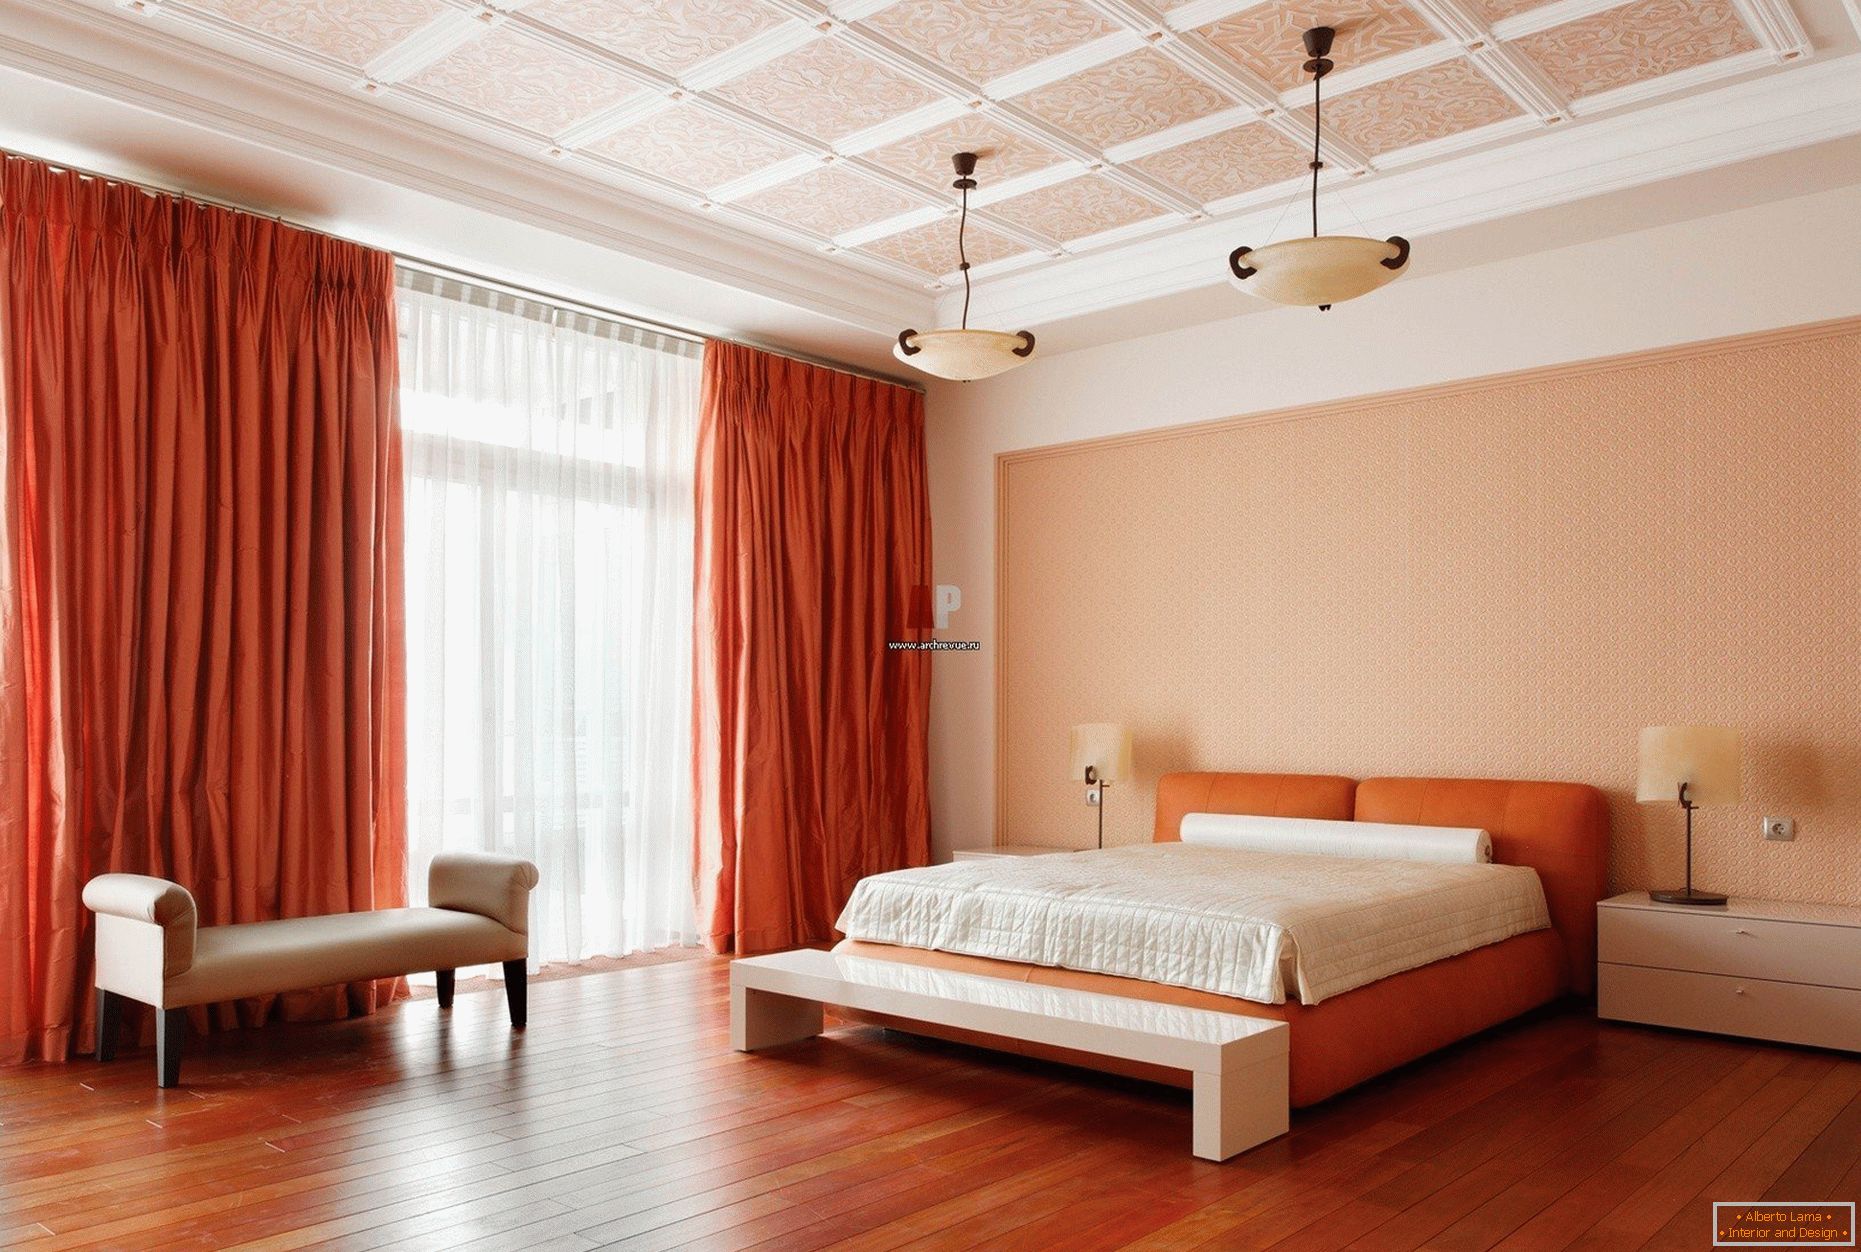 Narancssárga függönyök és ágy a hálószobában